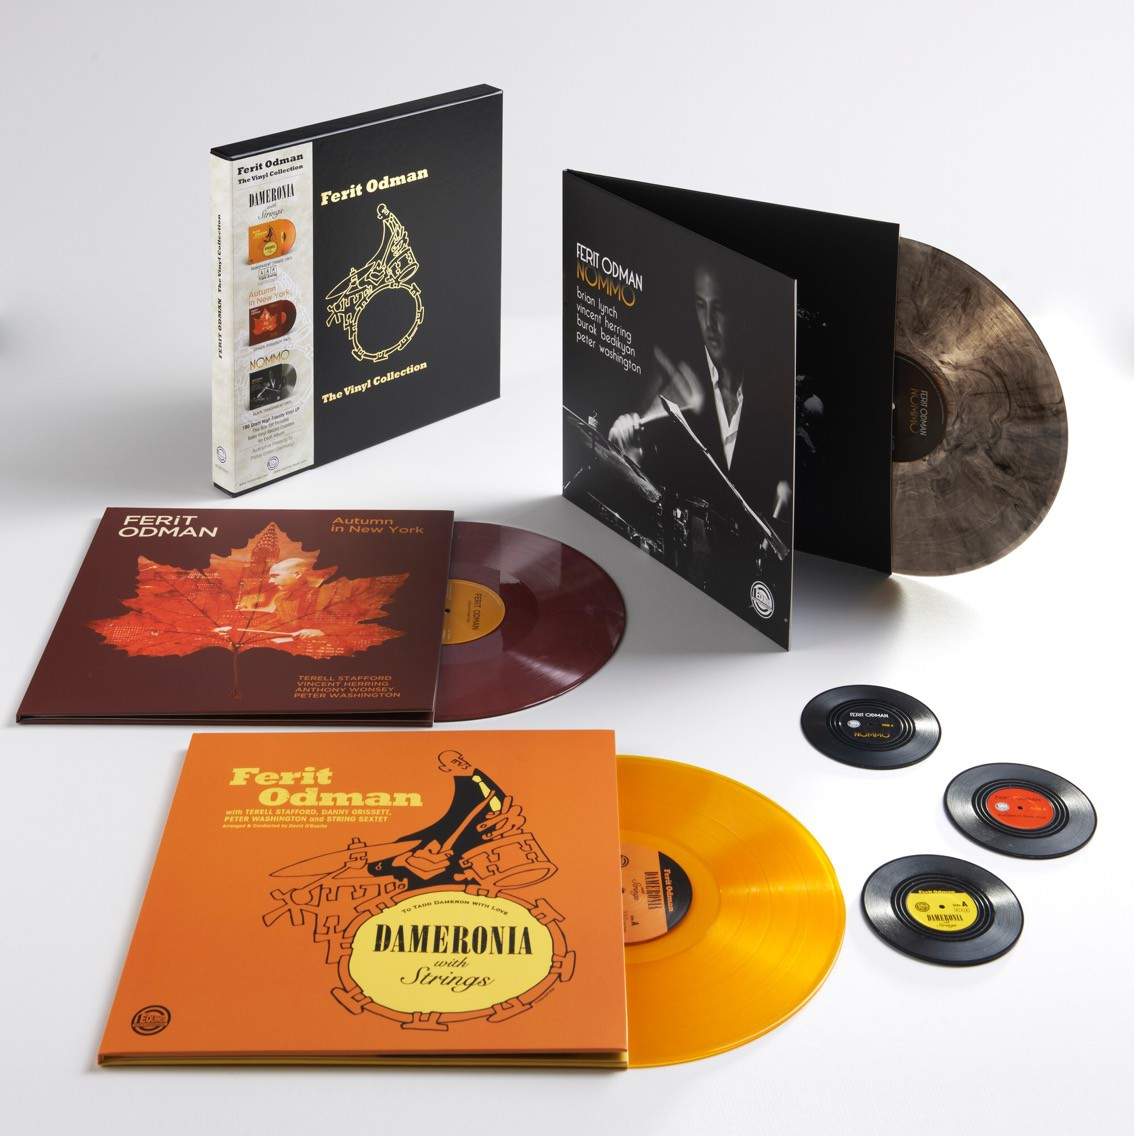 Ferit Odman The Vinyl Collection – Plak